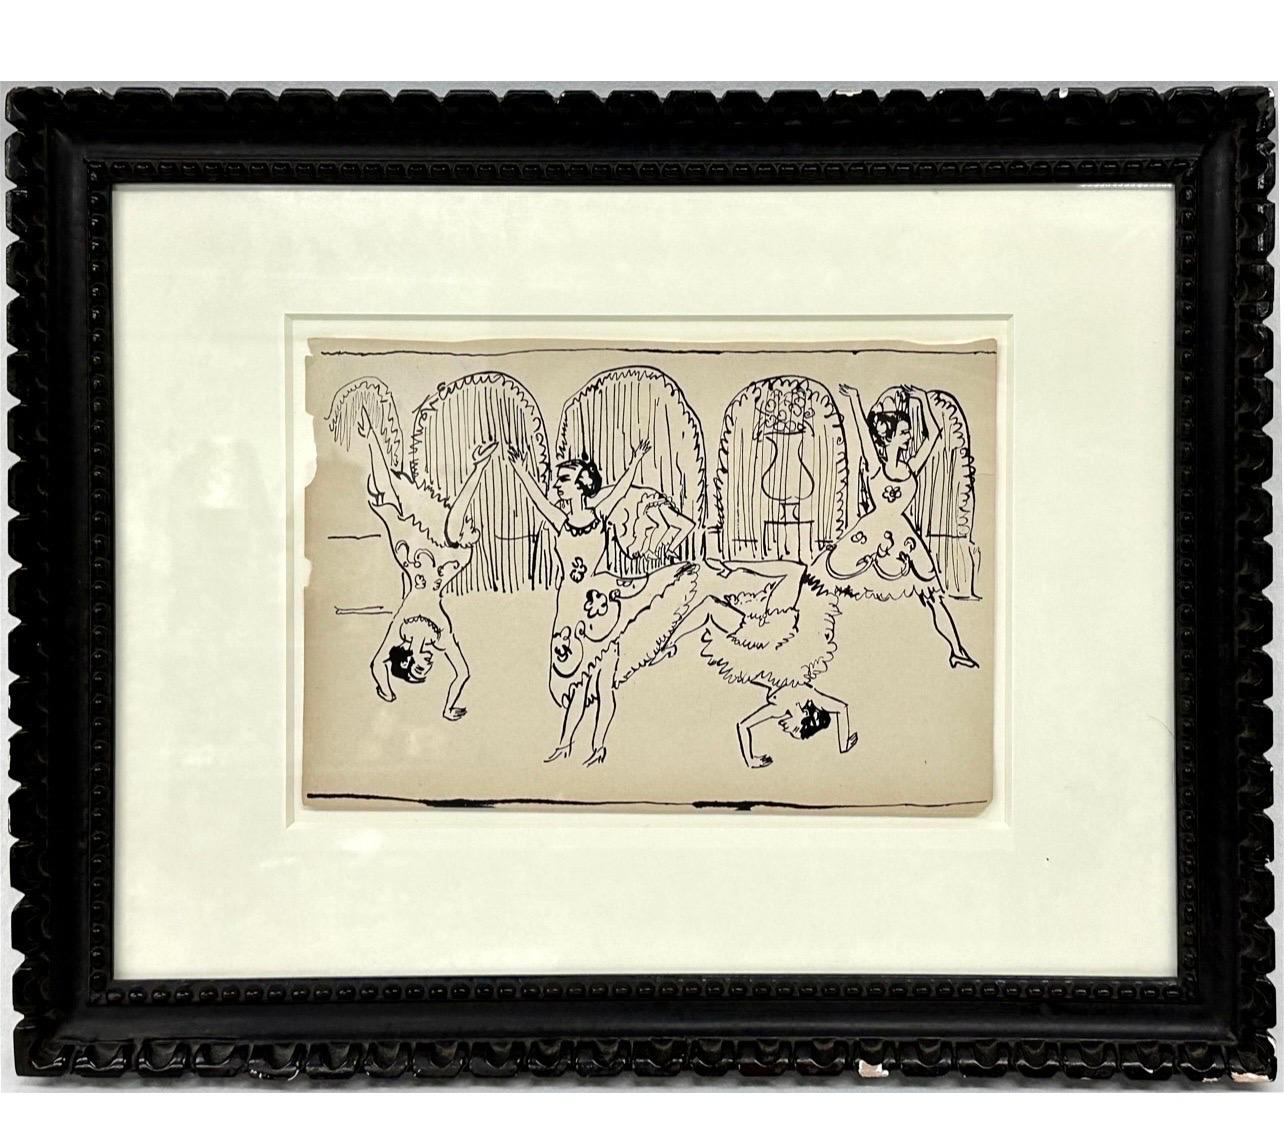 Ernst Ludwig Kirchner ( Deutschland 1880-1938 ) 
Expressionist Weibliche Frauen Tanzen Gemischte Medien auf Papier Zeichnung oder Malerei Expressionismus 
Abmessungen: 20" L 16" H  in 
Es trug einen Aufkleber des Auktionshauses Christies und einen